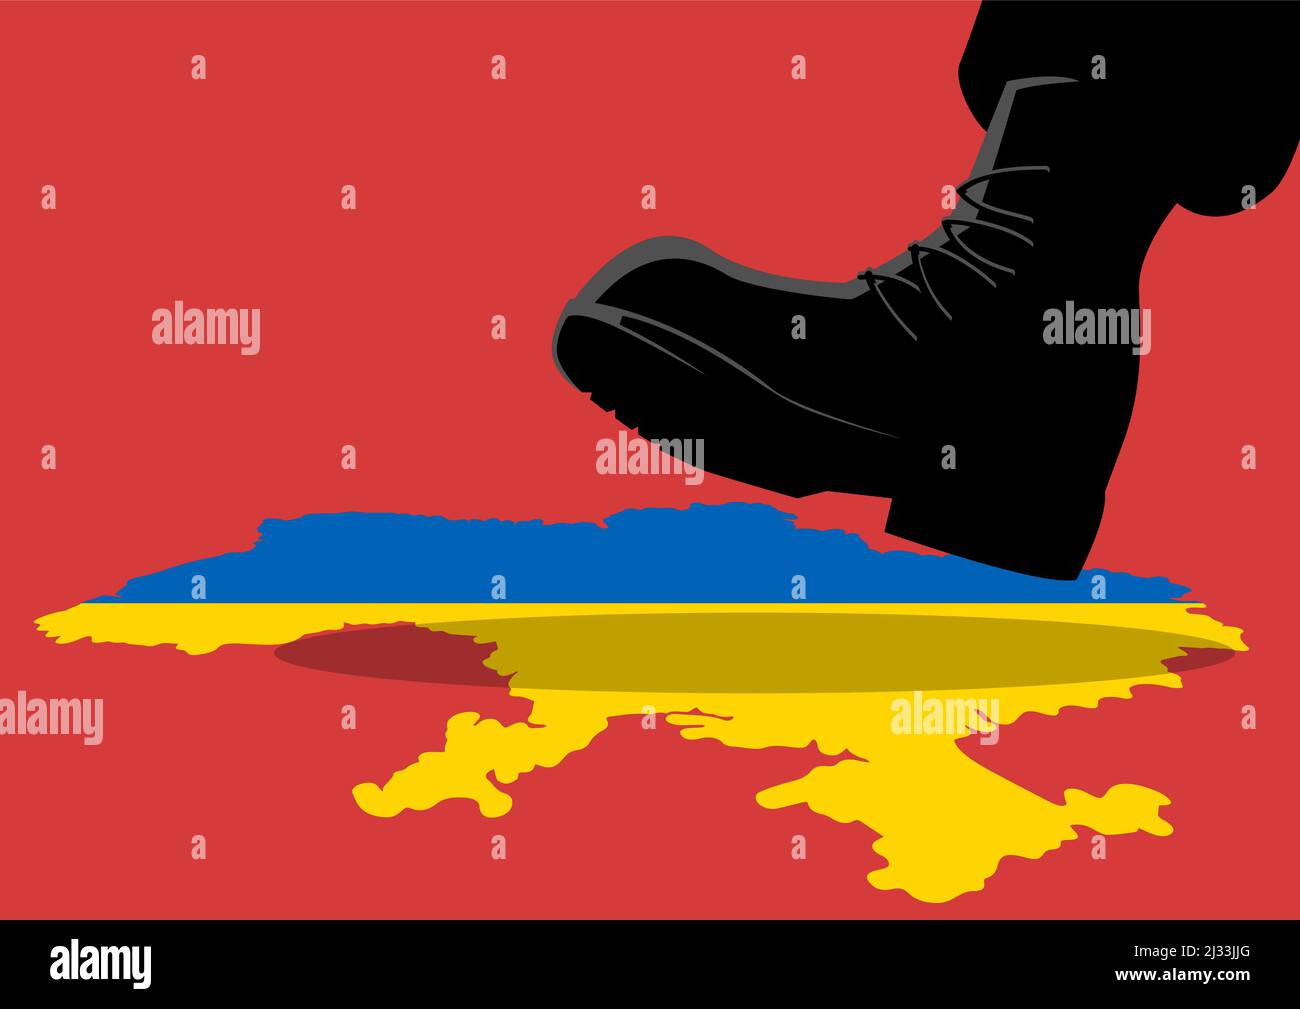 Vektor-Illustration eines riesigen Armee Boot trampeln auf der Ukraine-Karte, Invasion, Konflikt, unter Druck, Krieg Konzept Stock Vektor